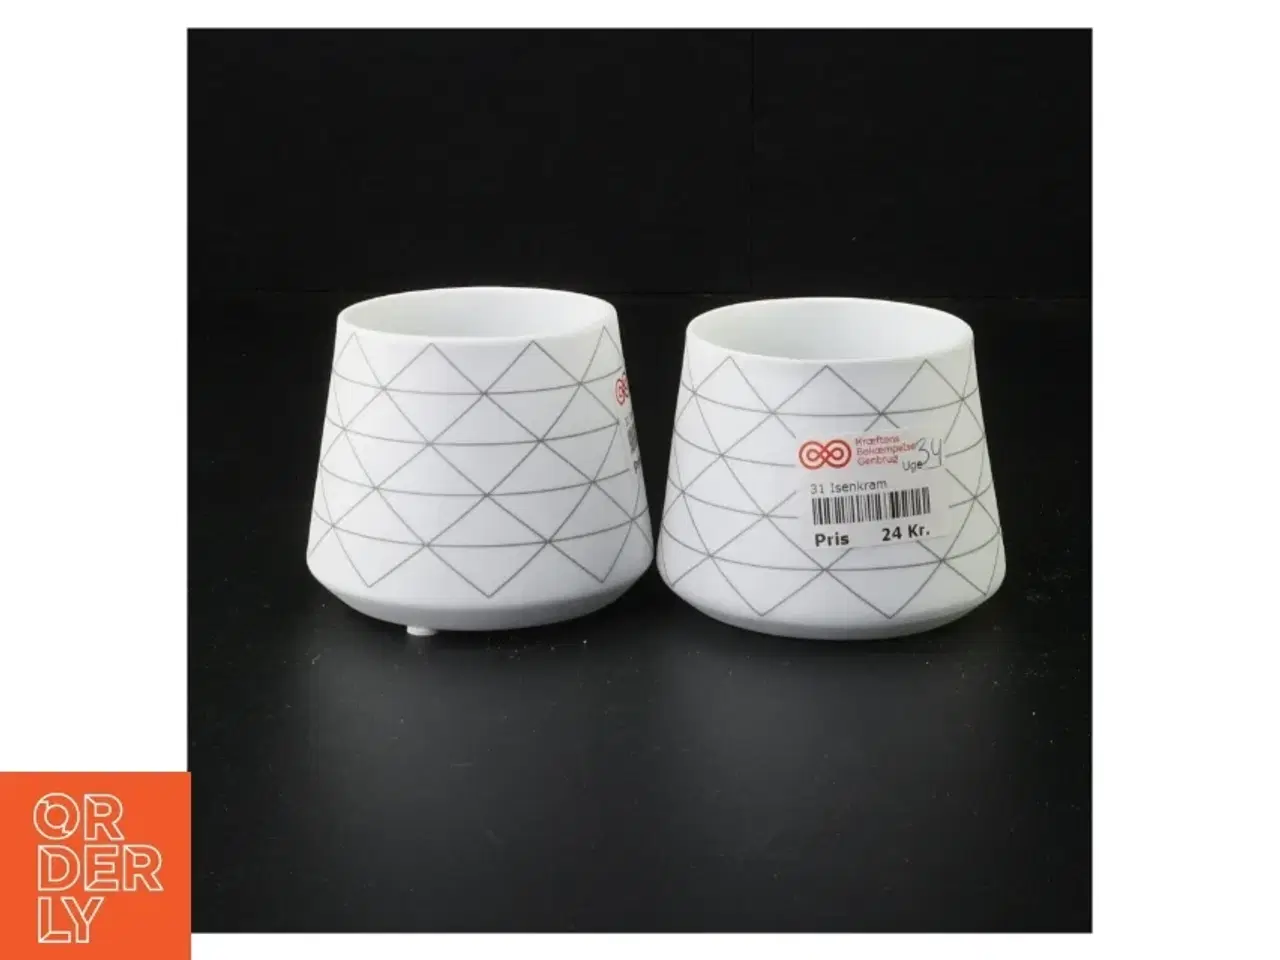 Billede 1 - Hvide keramikskåle med geometrisk mønster fra Home Collection (str. 7 x 8 cm)